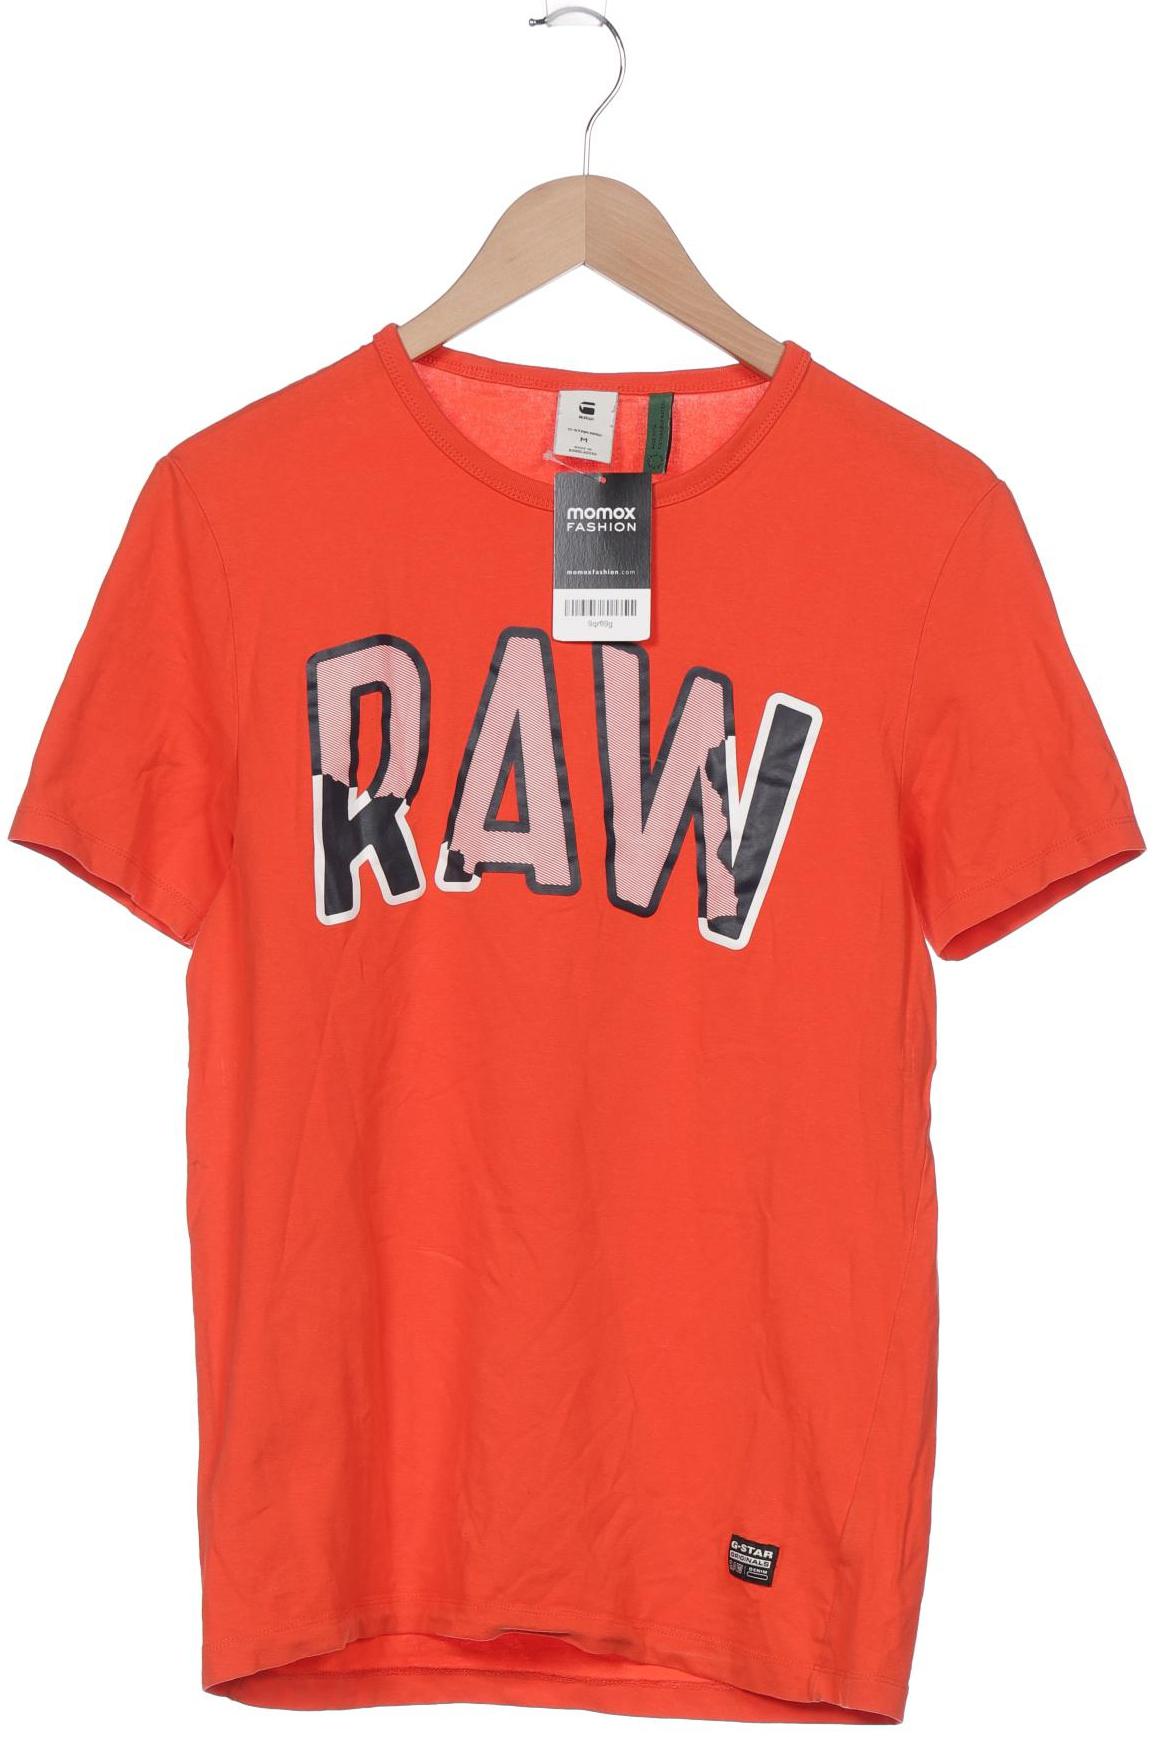 G-STAR RAW Damen T-Shirt, orange von G-Star Raw